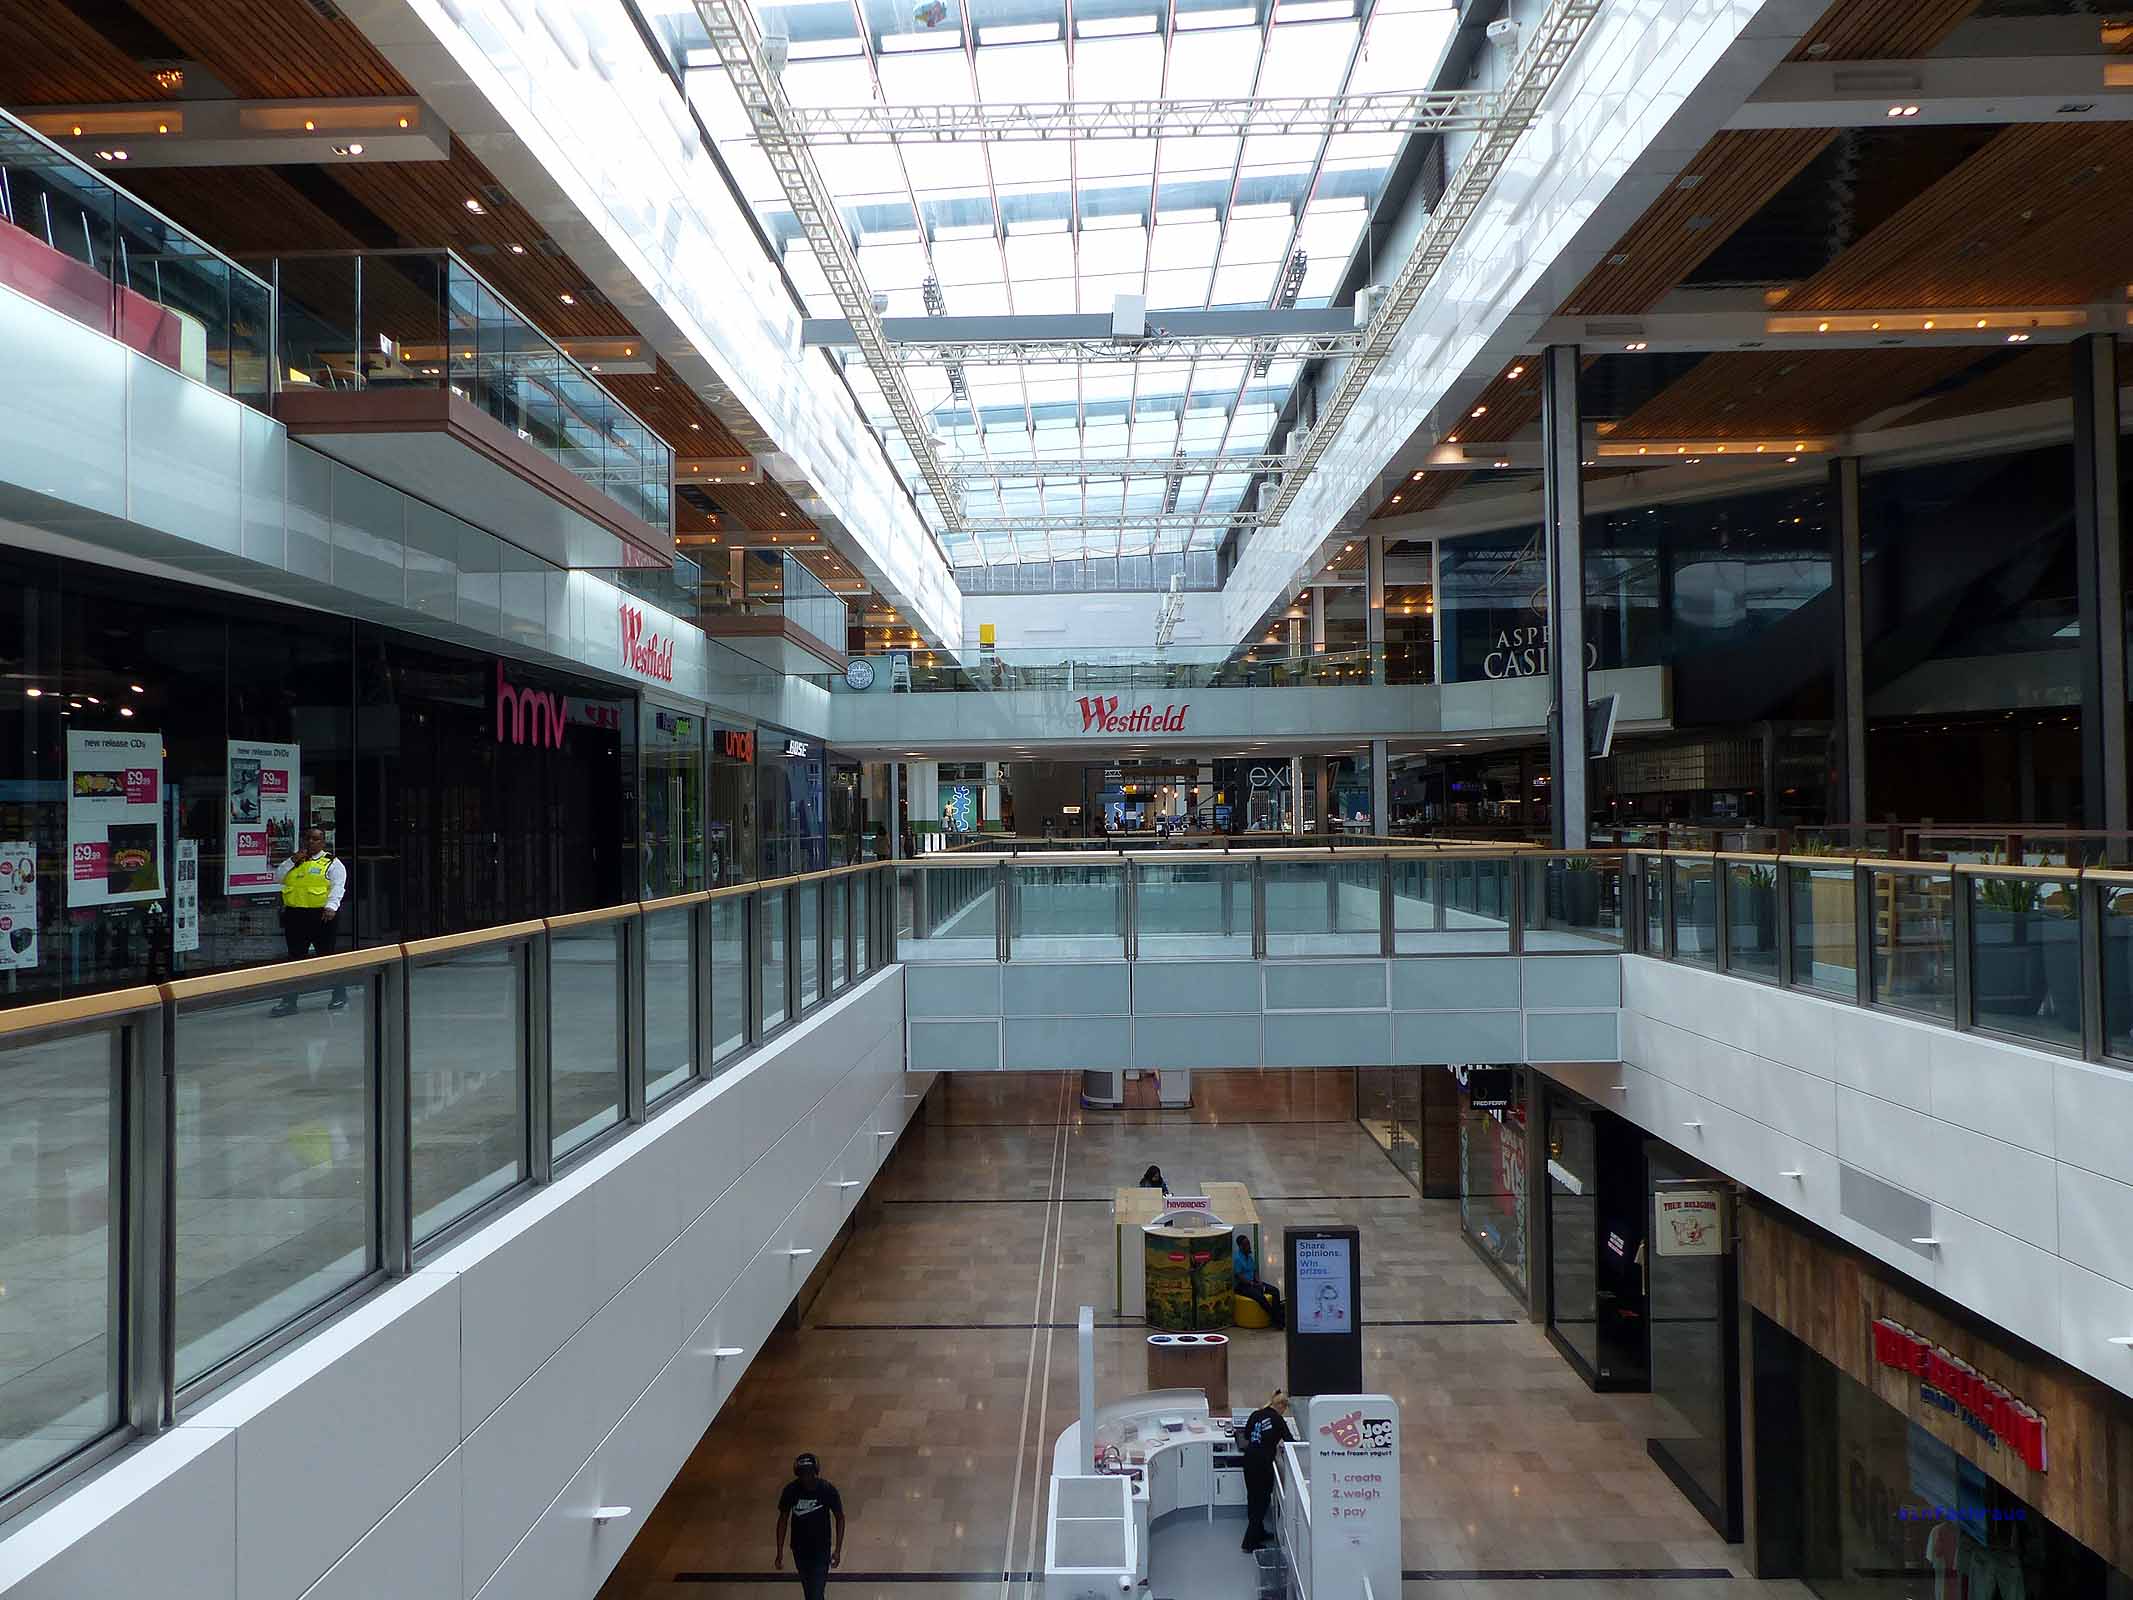 Das Westfield -Center gehört zu den größten Shoppingmalls in Europa